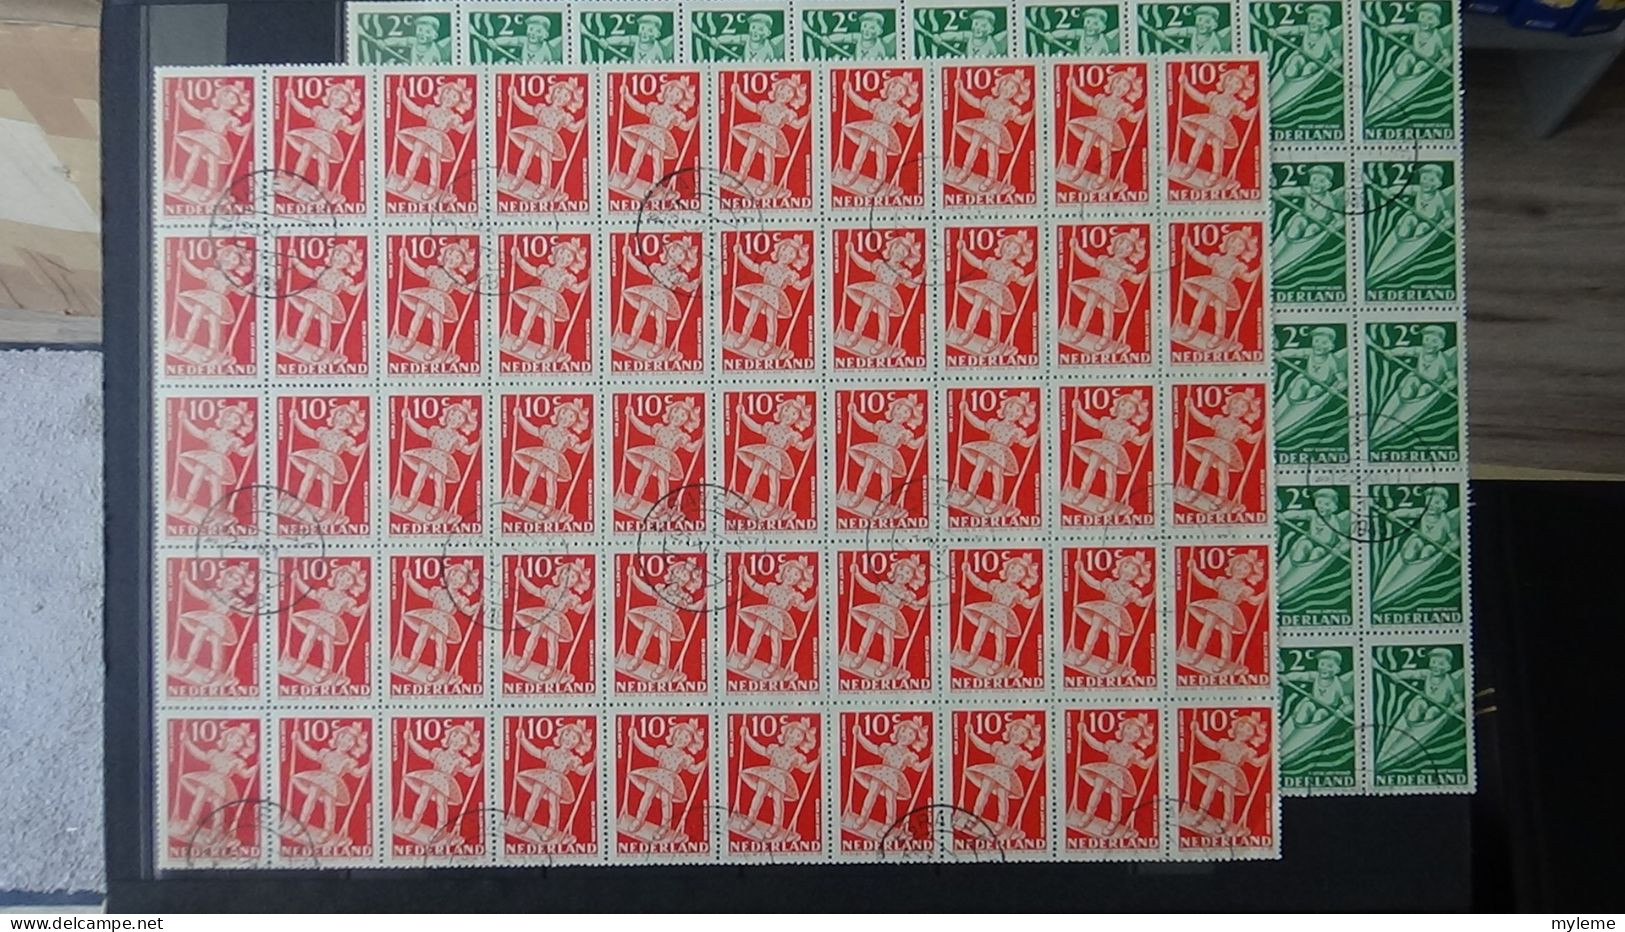 BF14 Ensemble de timbres feuilles et fragments de feuilles ** et oblitérés des Pays Bas.  A saisir !!!.